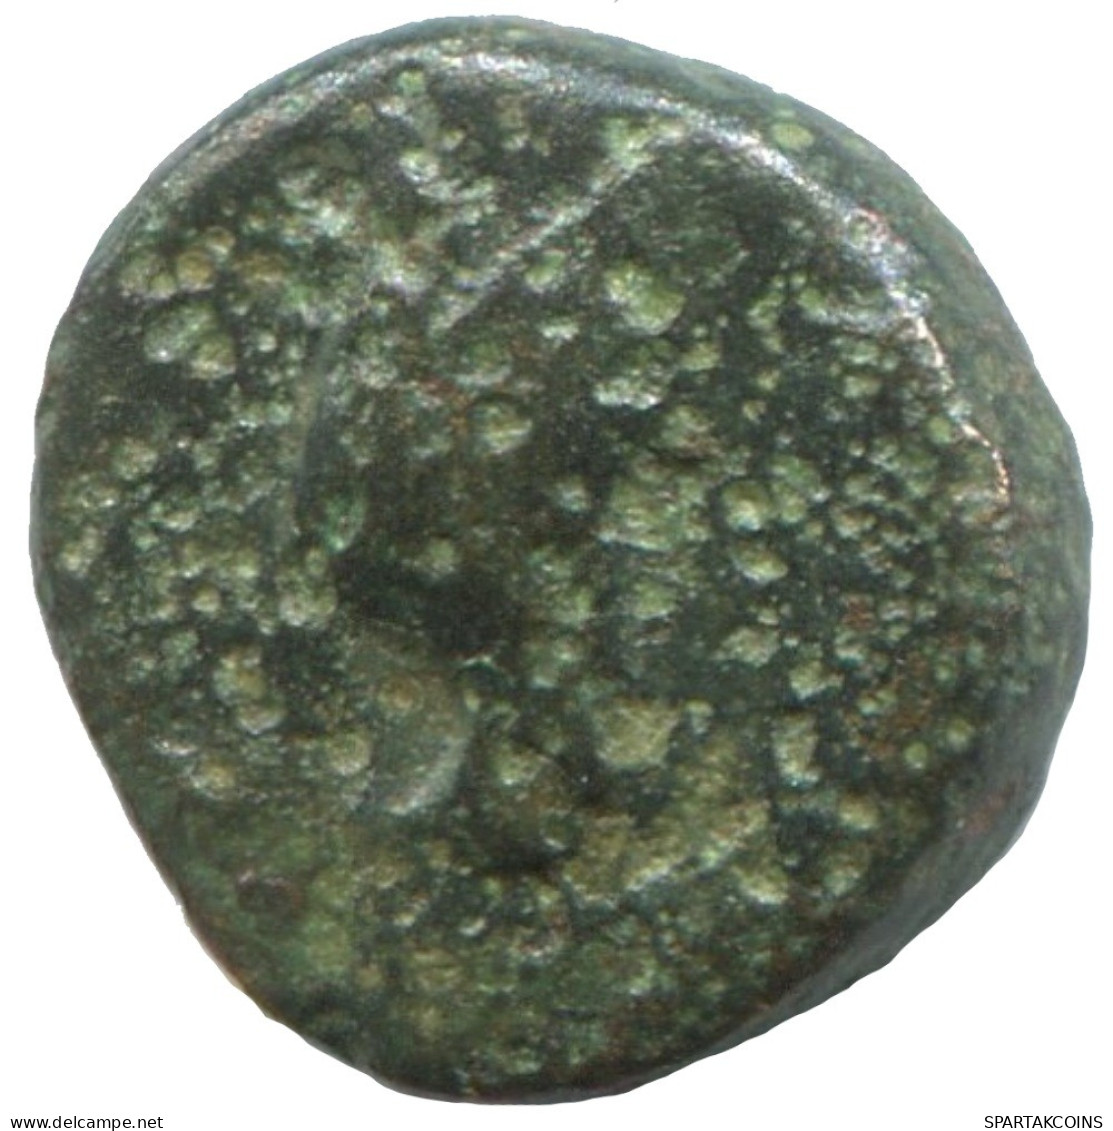 Ancient Antike Authentische Original GRIECHISCHE Münze 1.6g/11mm #SAV1334.11.D.A - Griechische Münzen